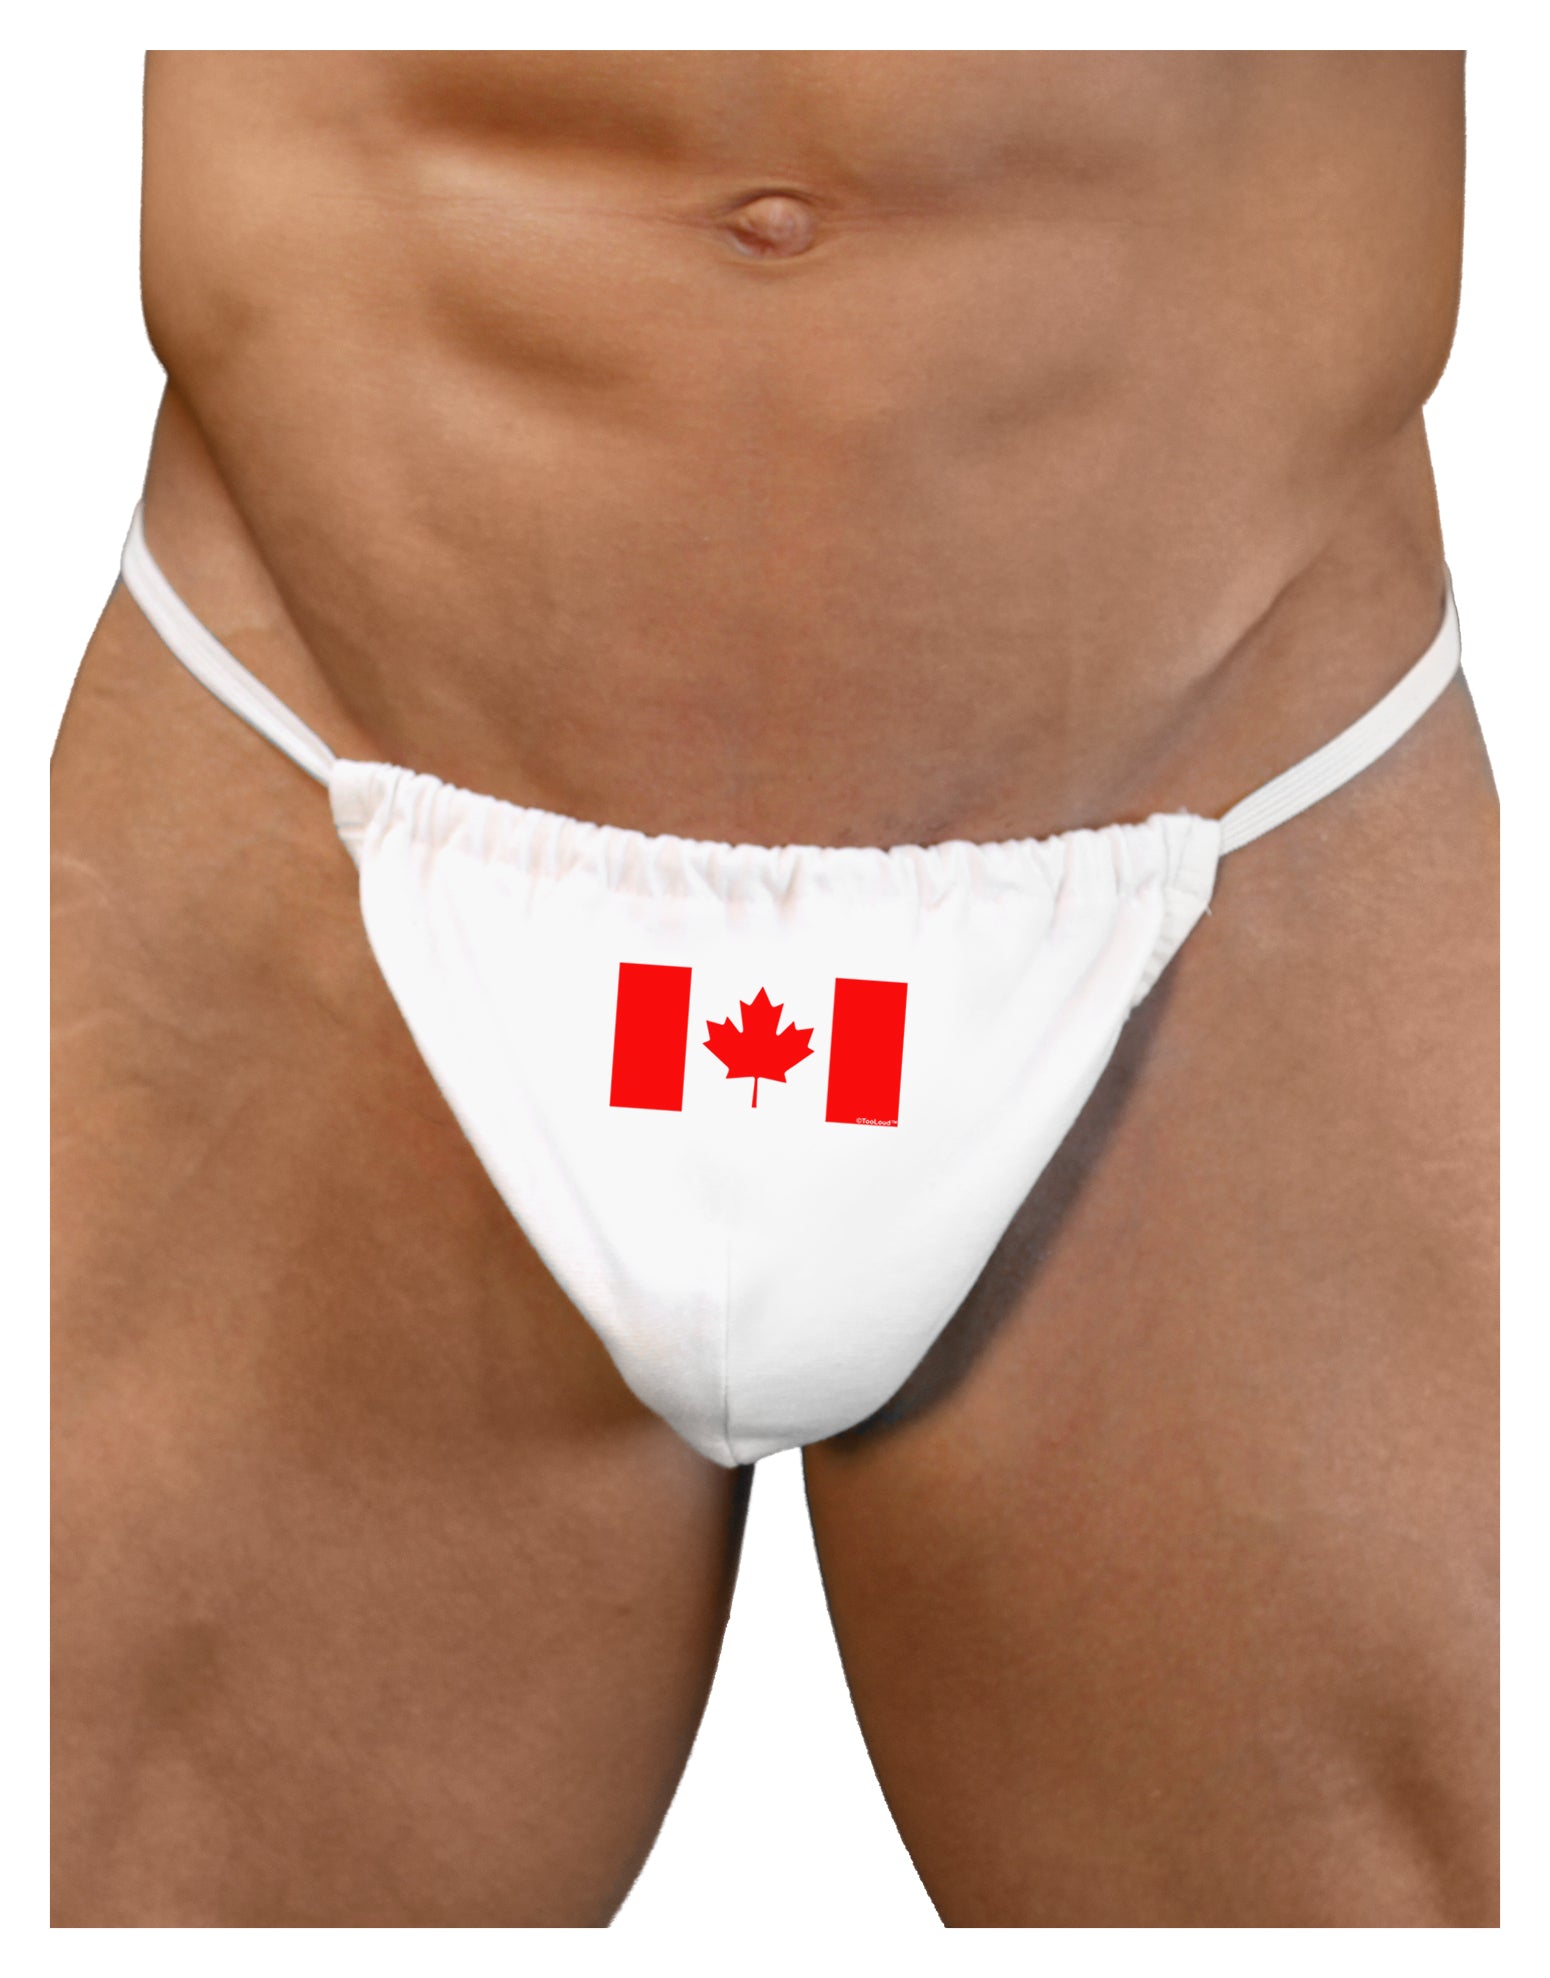 Printed Panties -  Canada